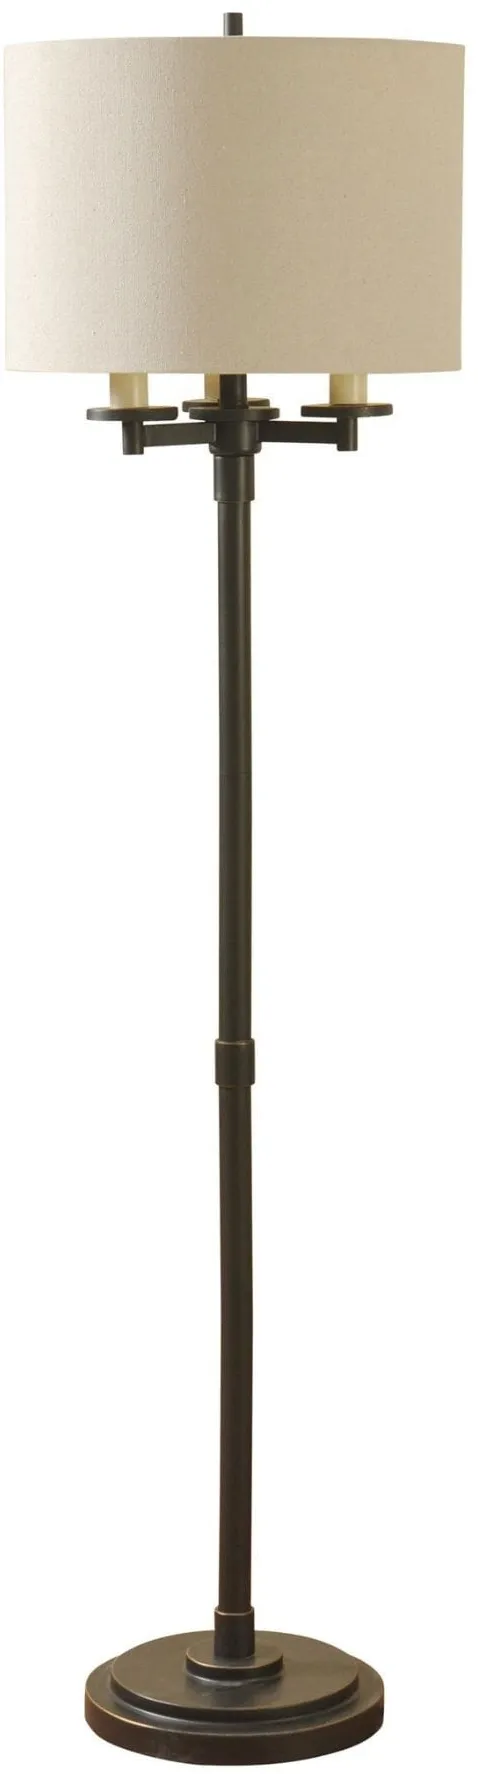 Bronze Finish Floor Lamp 65.5"H